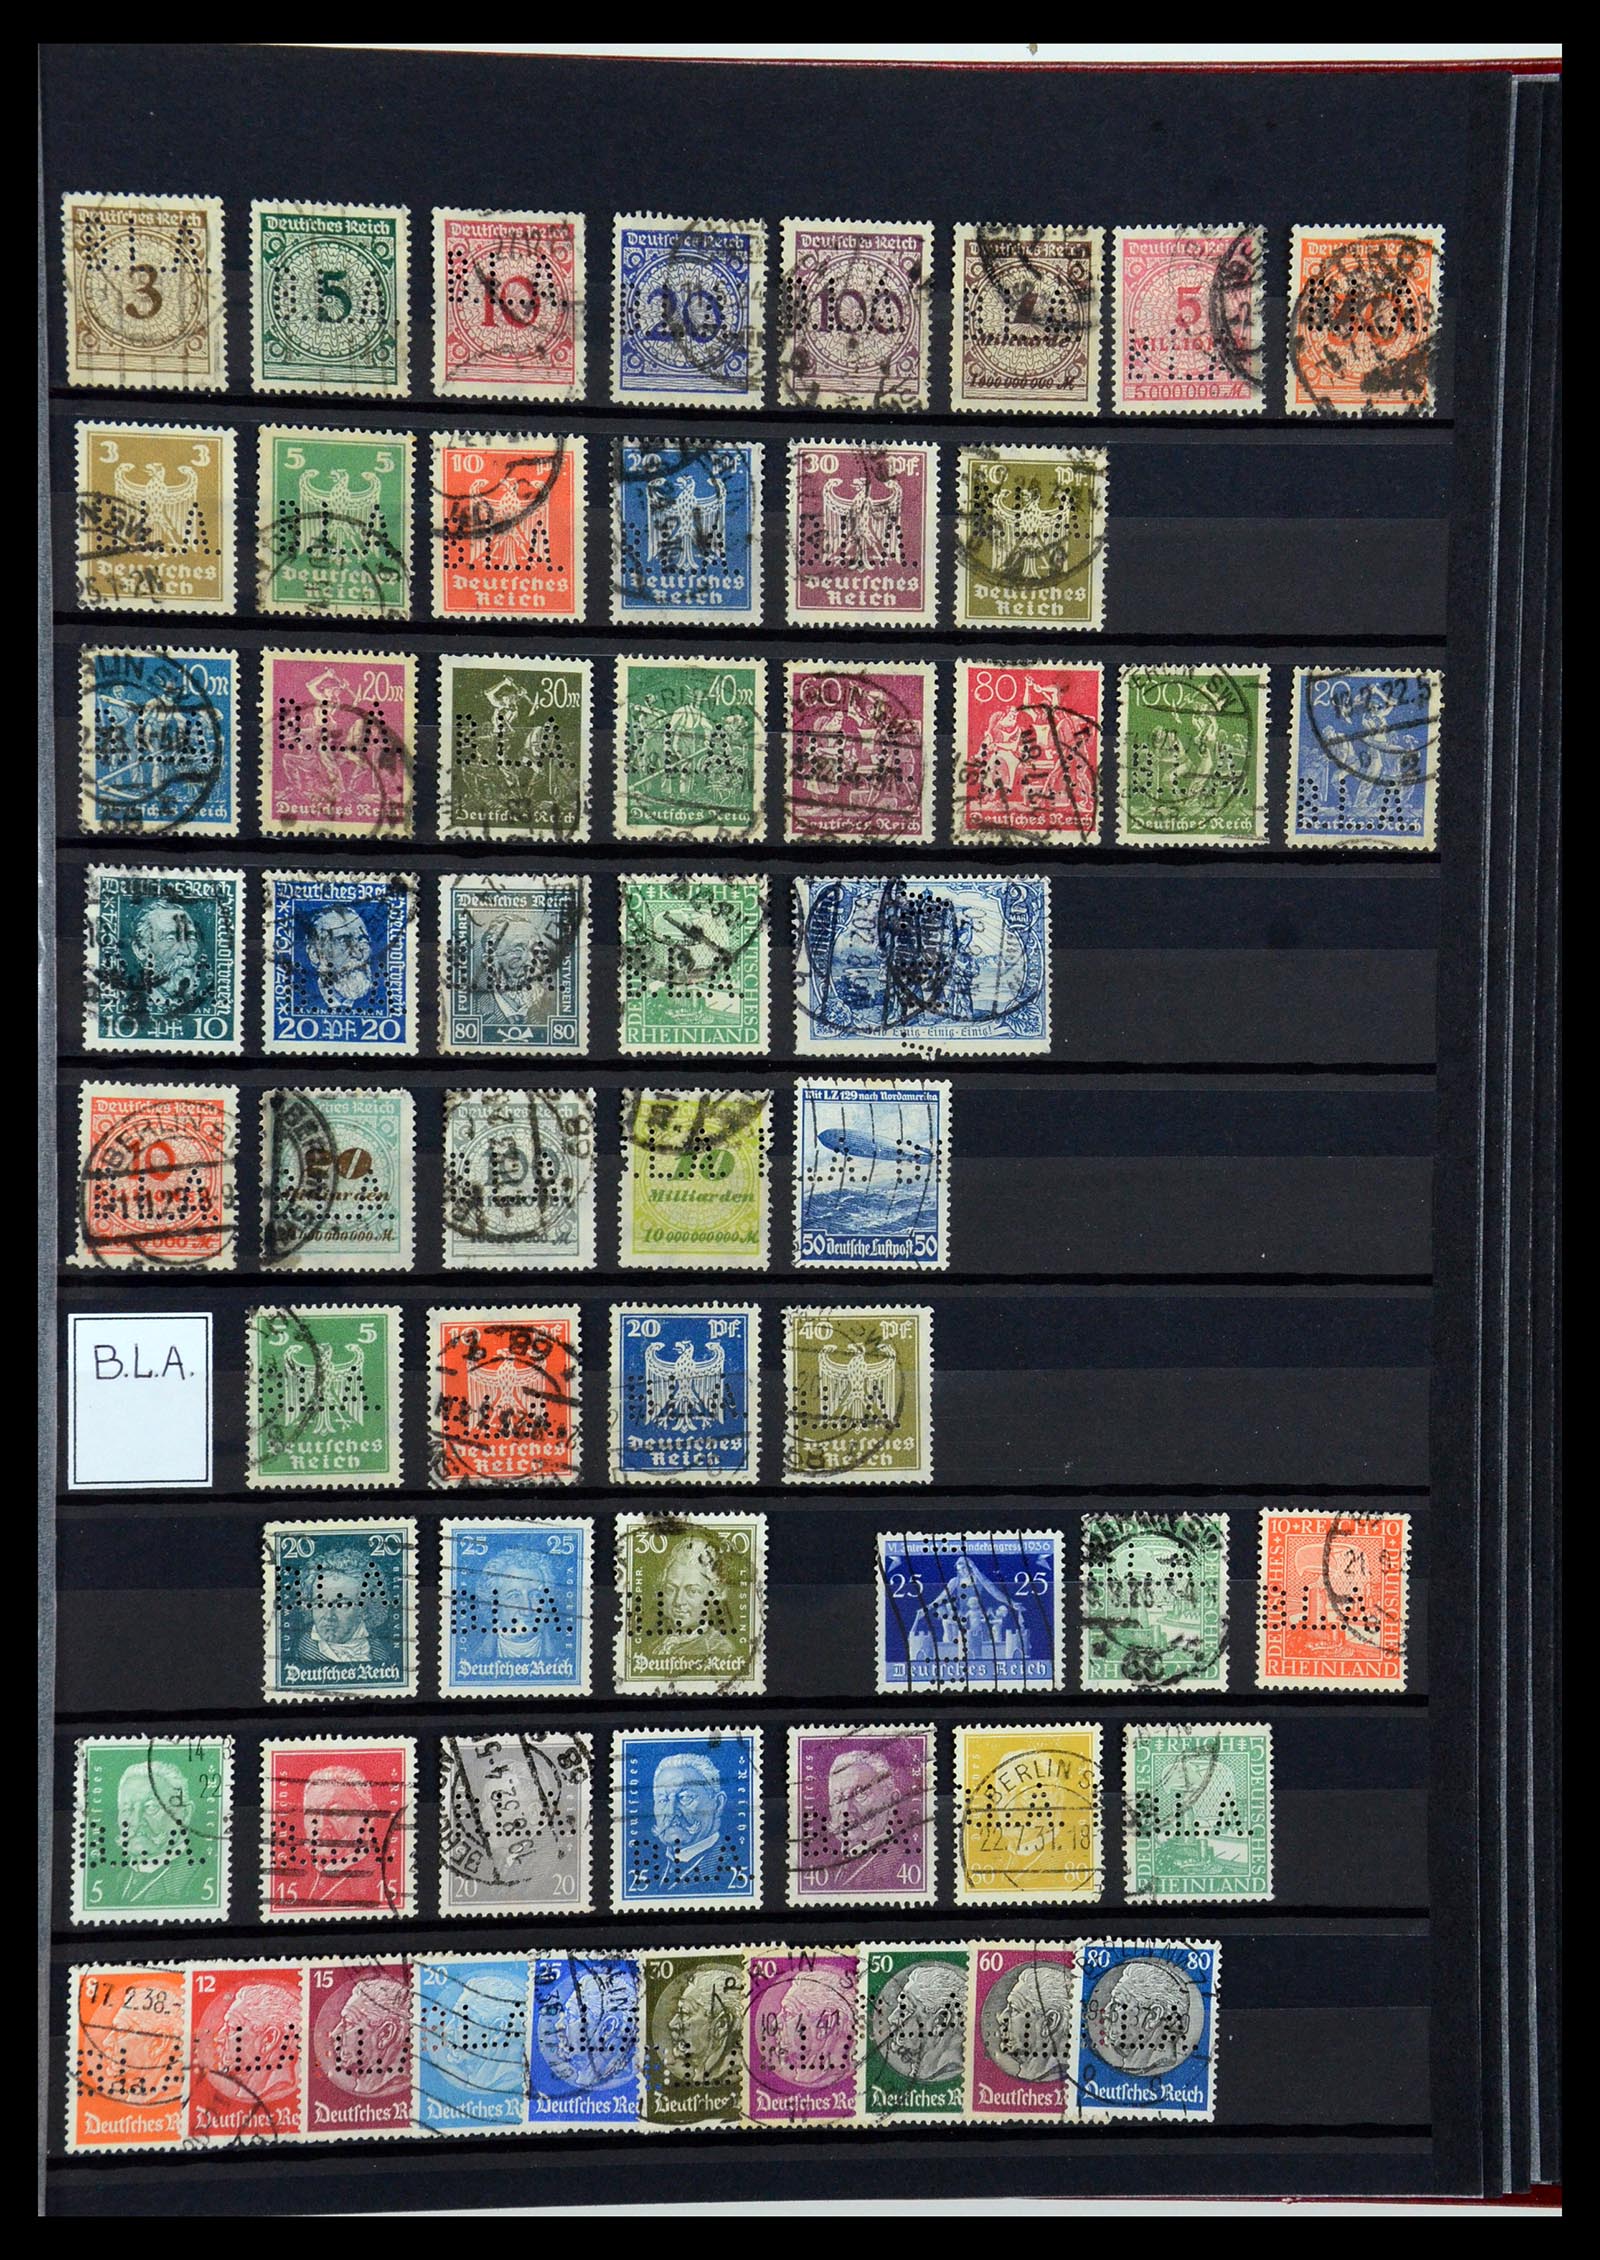 36405 044 - Stamp collection 36405 German Reich perfins 1880-1945.